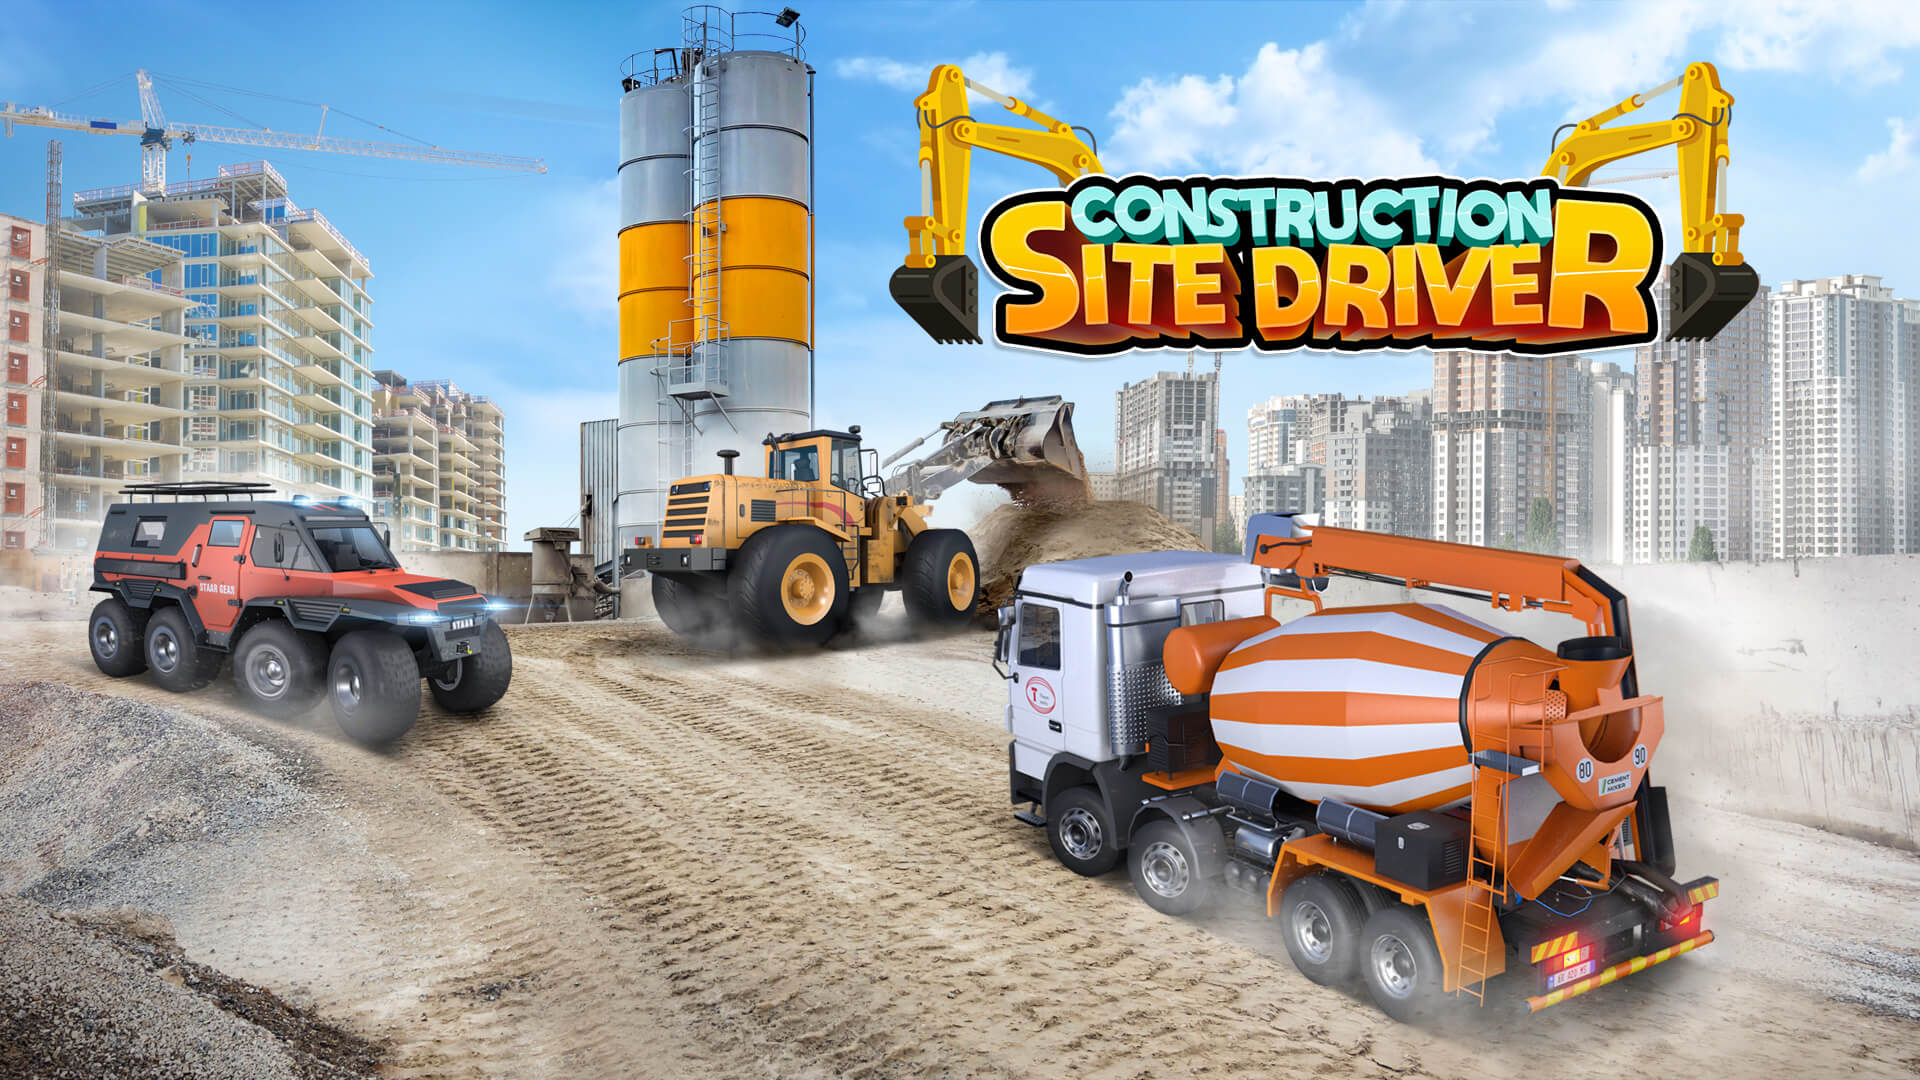 Construction Site Driver